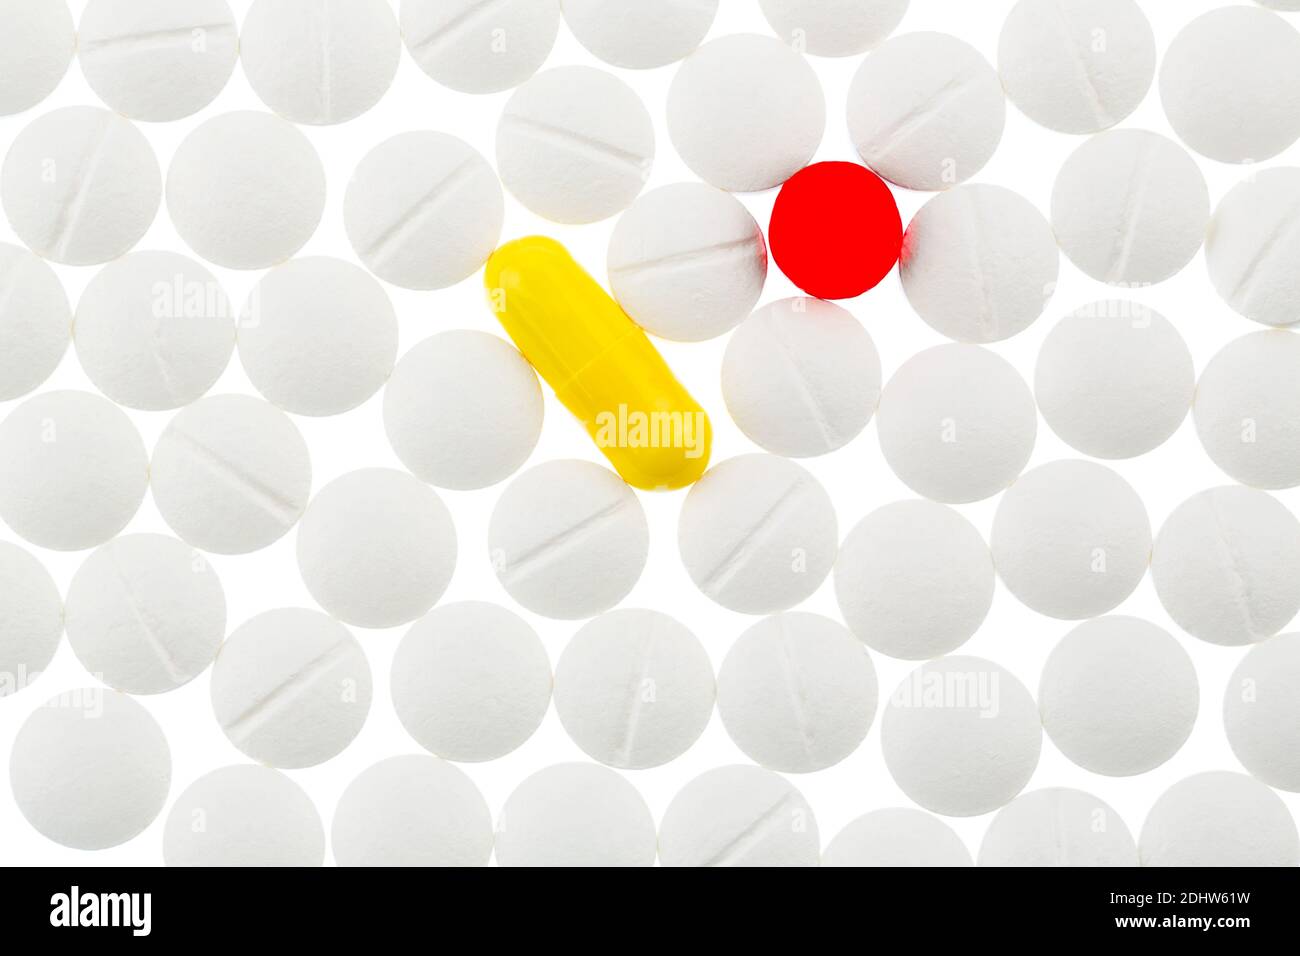 Verschiedene Tabletten, Kosten, Geld, Euro, Krankenhasse,, Medizin, Pillen, Weisse, eine gelbe, eine rote, Banque D'Images